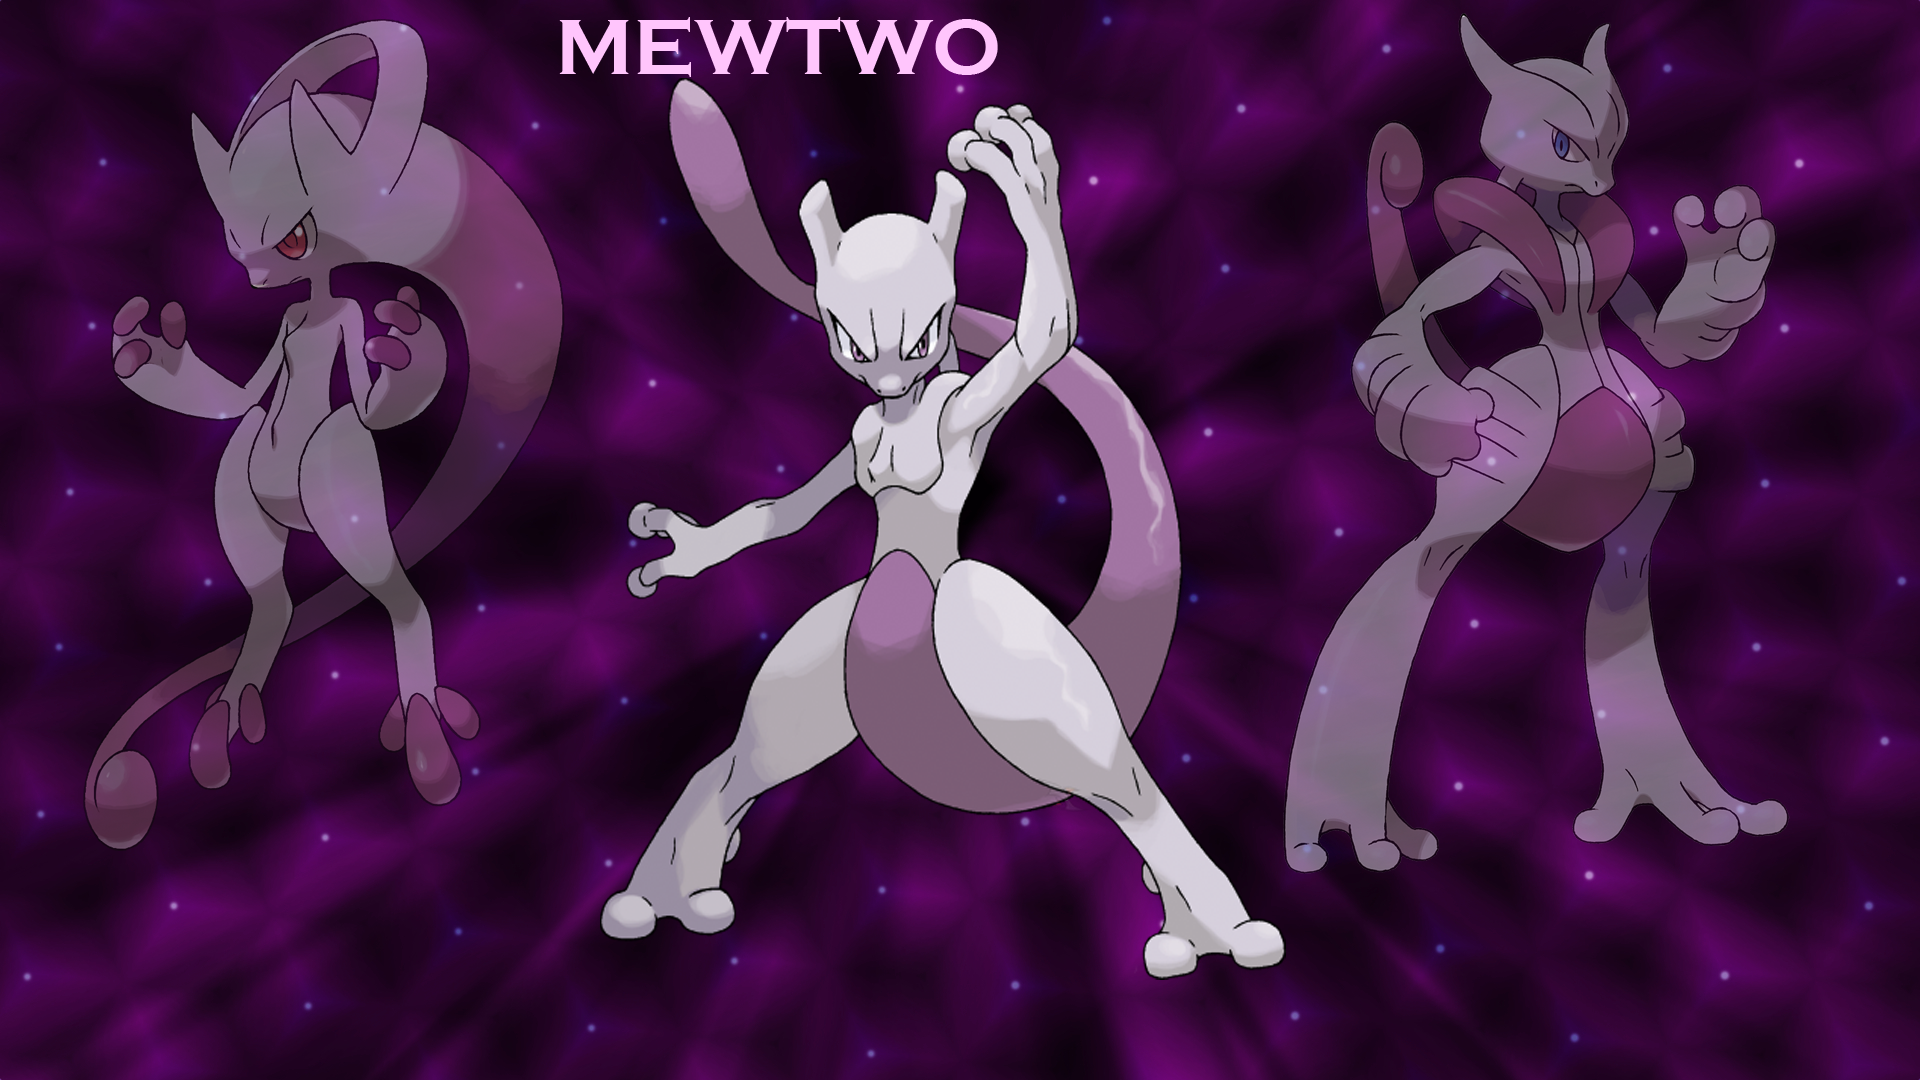 Mewtwo hình nền miễn phí tải về: Sở hữu bức ảnh Mewtwo hấp dẫn và tải miễn phí chúng đến điện thoại của bạn. Hãy để hình ảnh này truyền tải cảm giác mạnh mẽ và tưng bừng cho bạn.